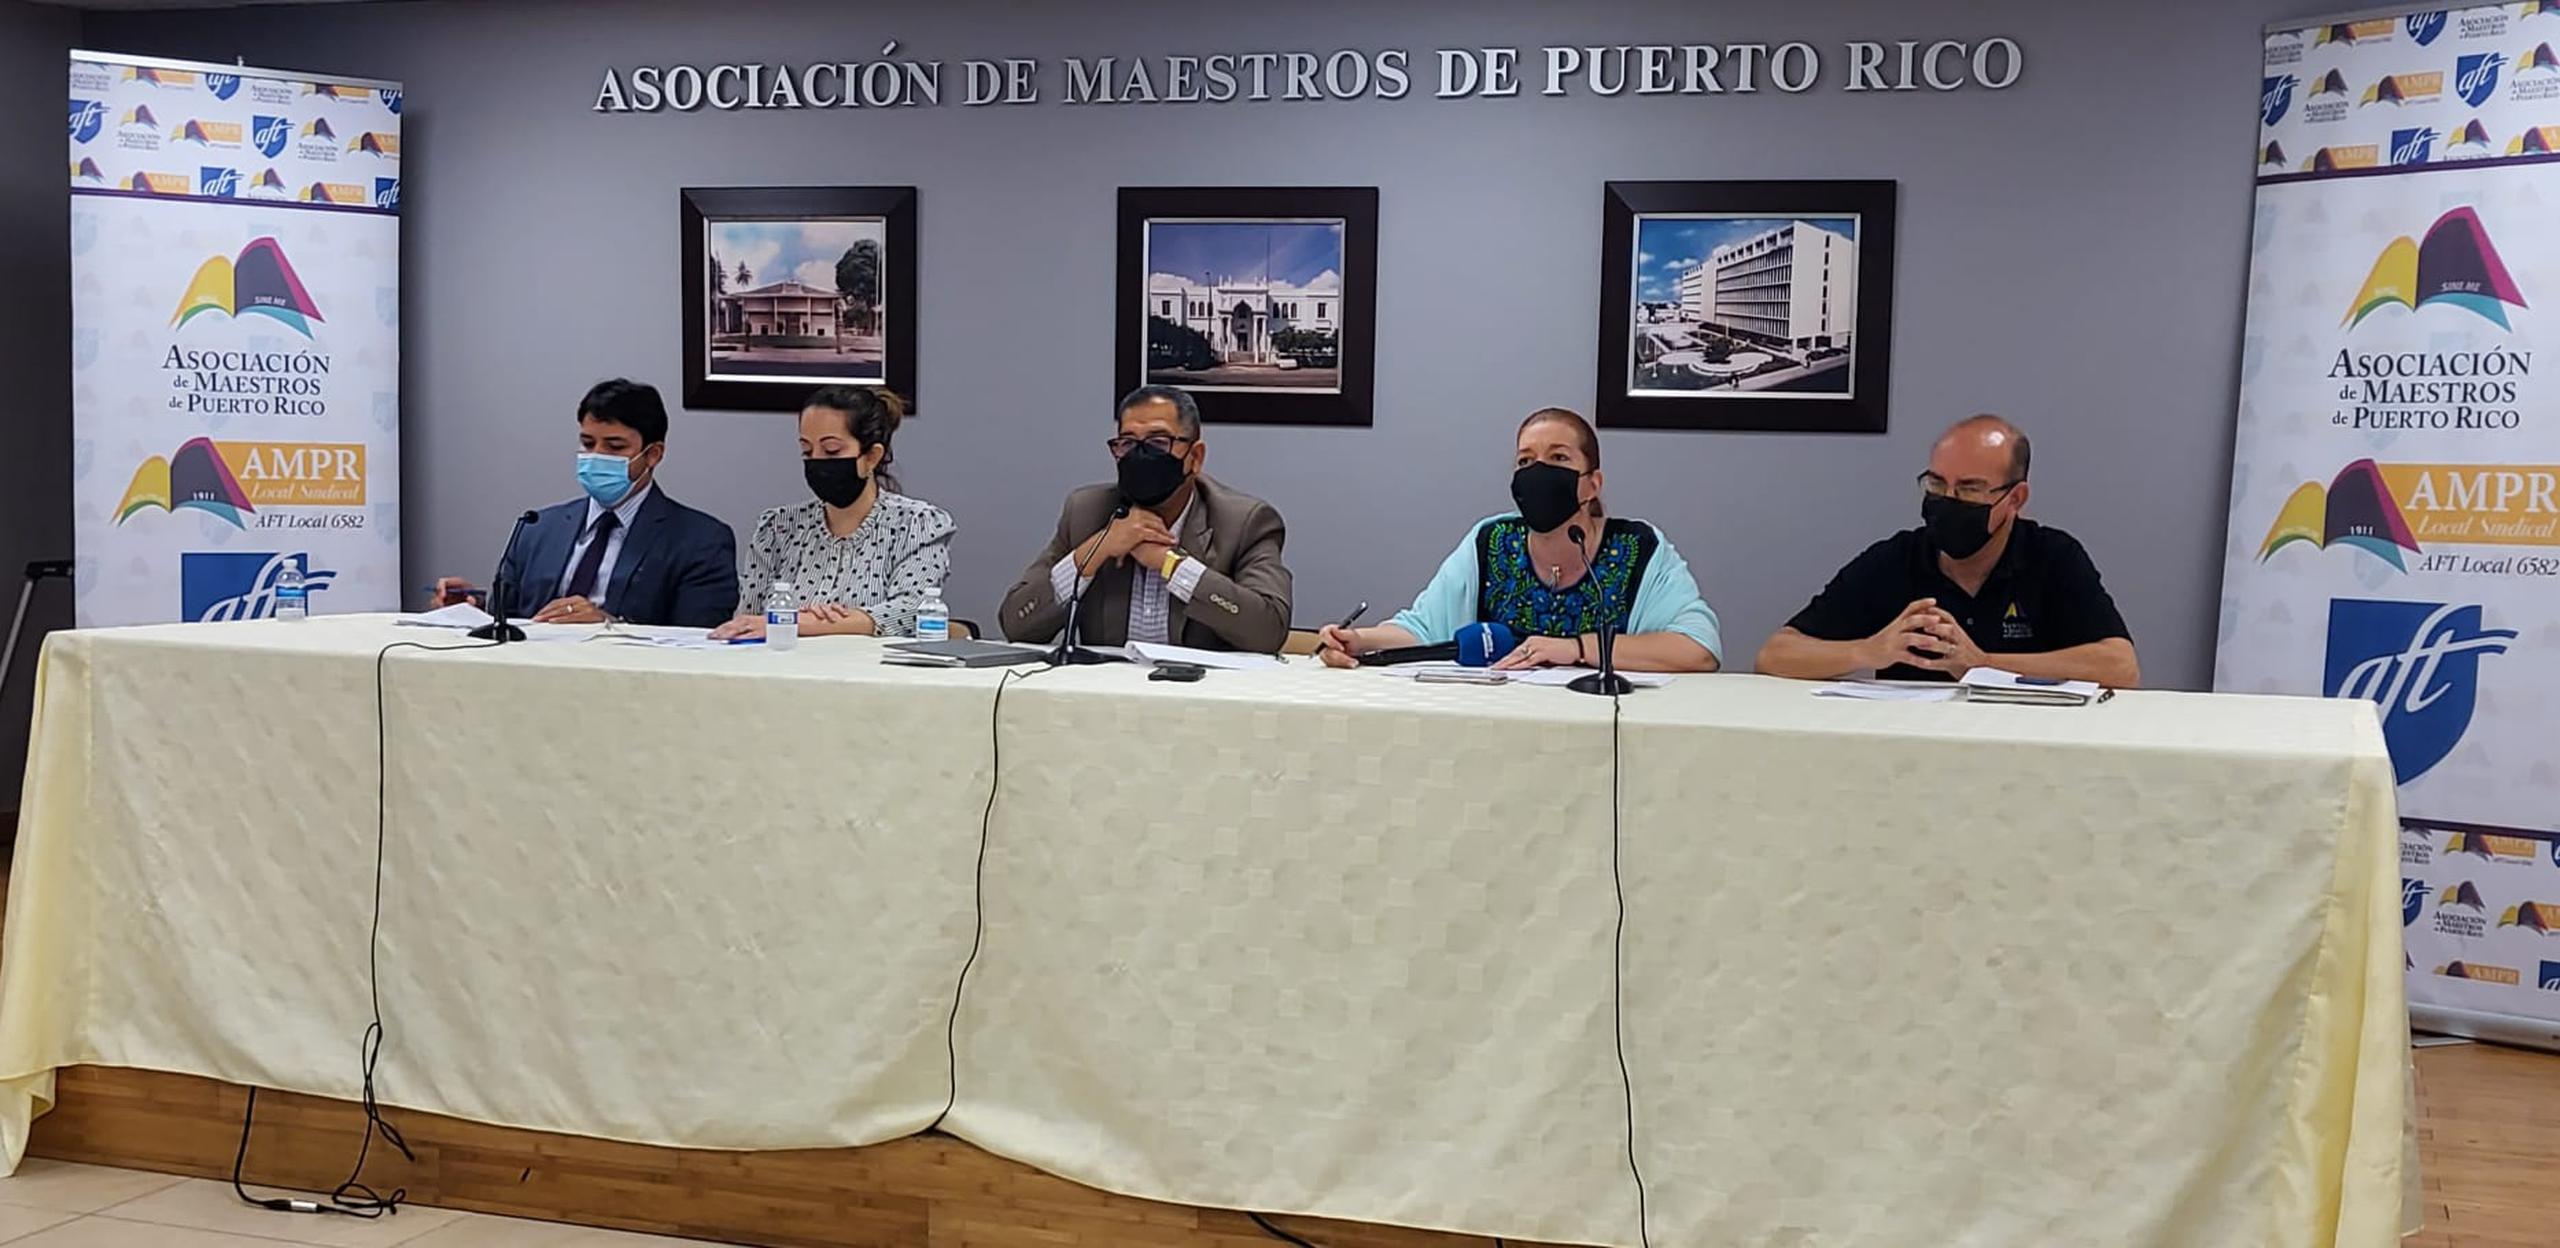 El presidente de la Asociación de Maestros, Víctor Bonilla, presentó la acción legal que han entablado ante la entrada en vigor del Plan de Ajuste de la Deuda.